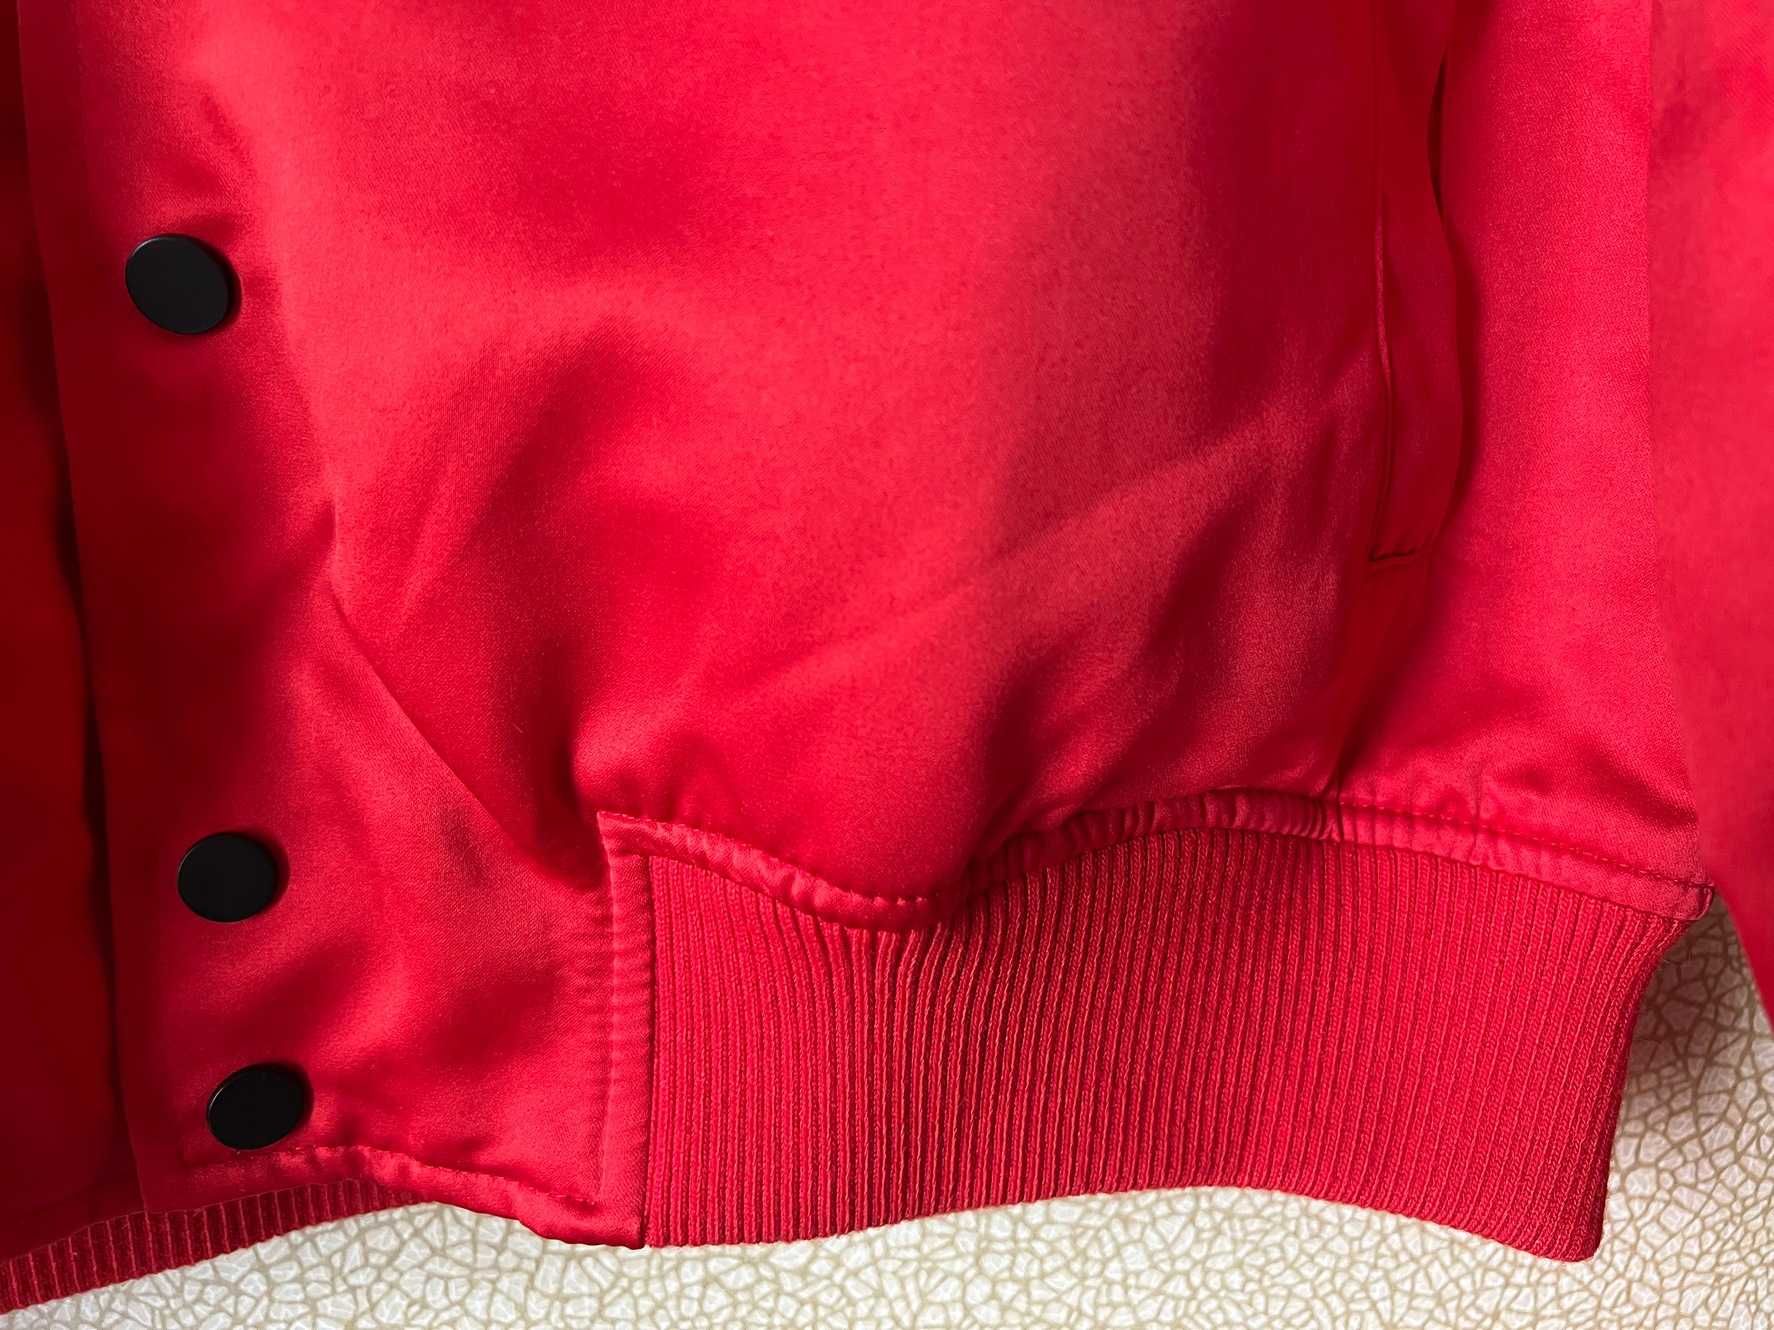 Мужская новая куртка бомбер красная  атласная сатиновая